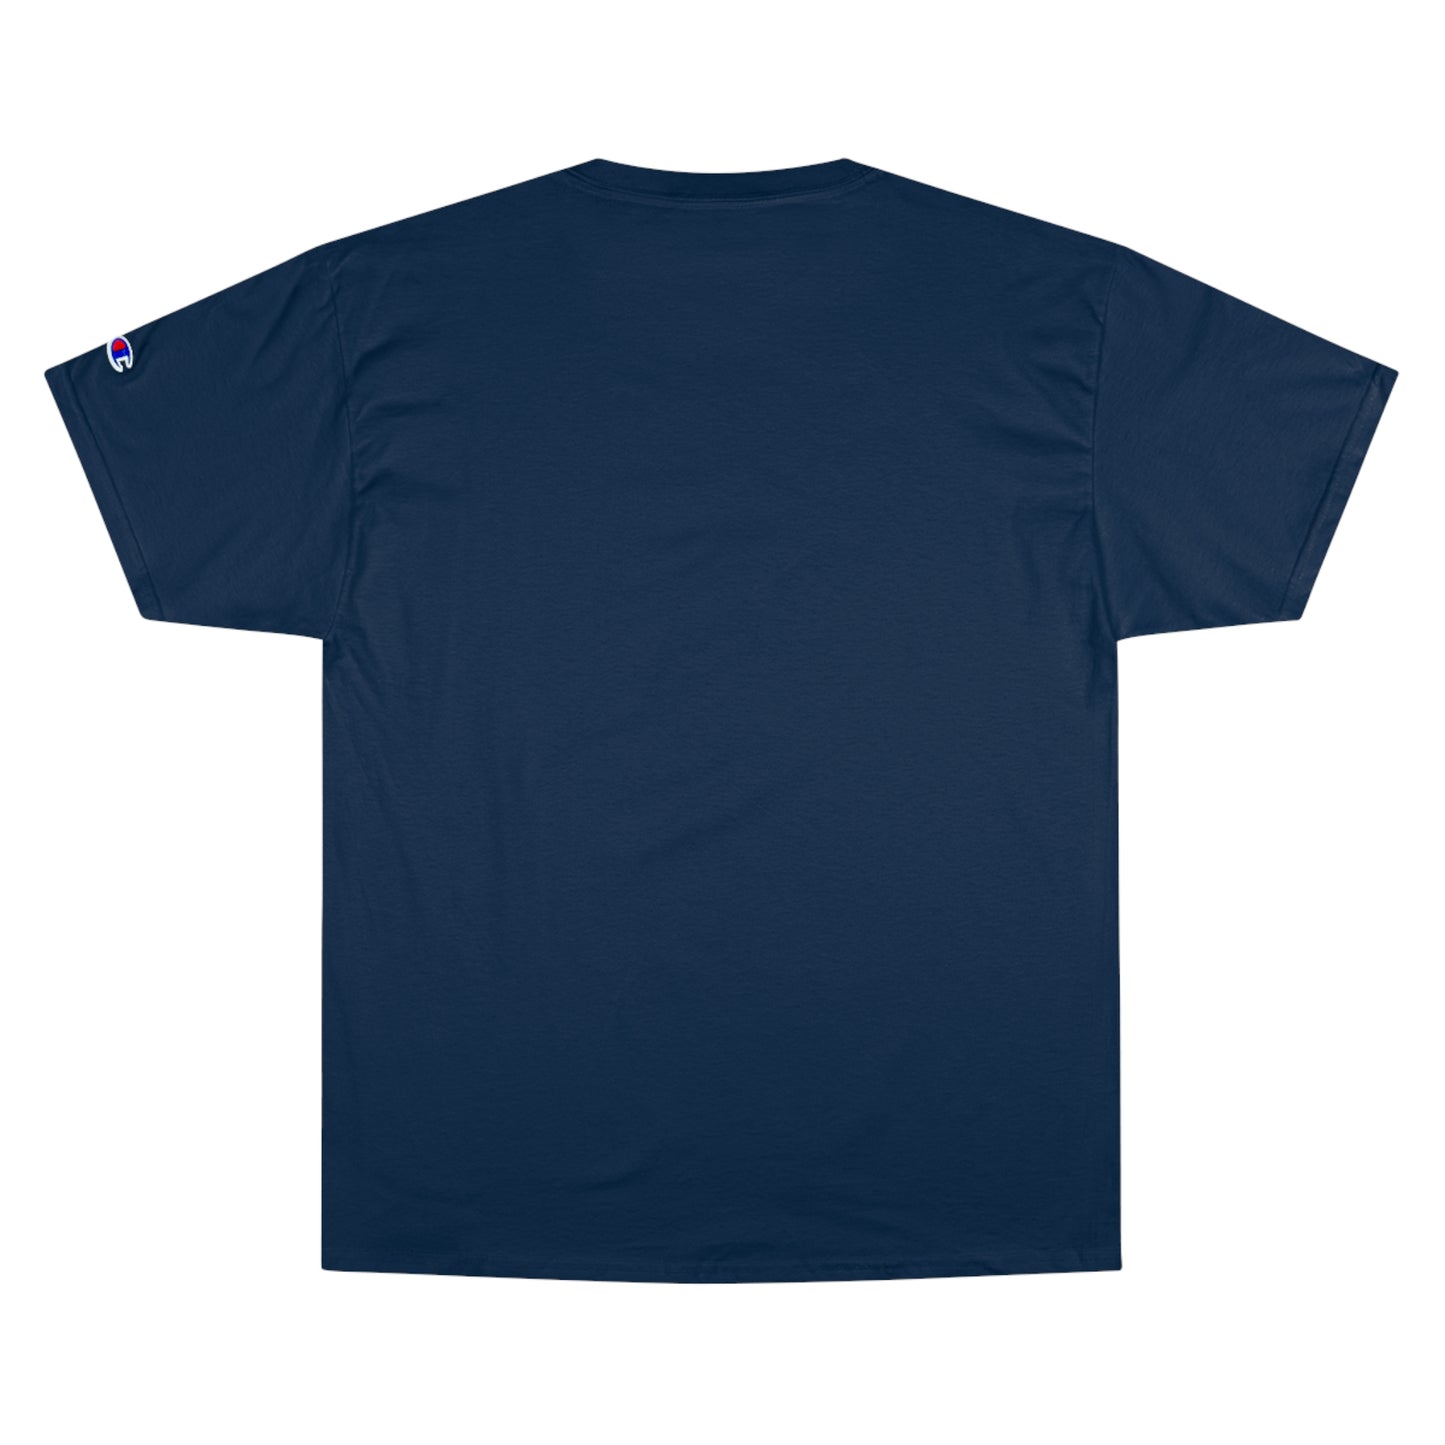 Basketball Cutout - Champion T-Shirt